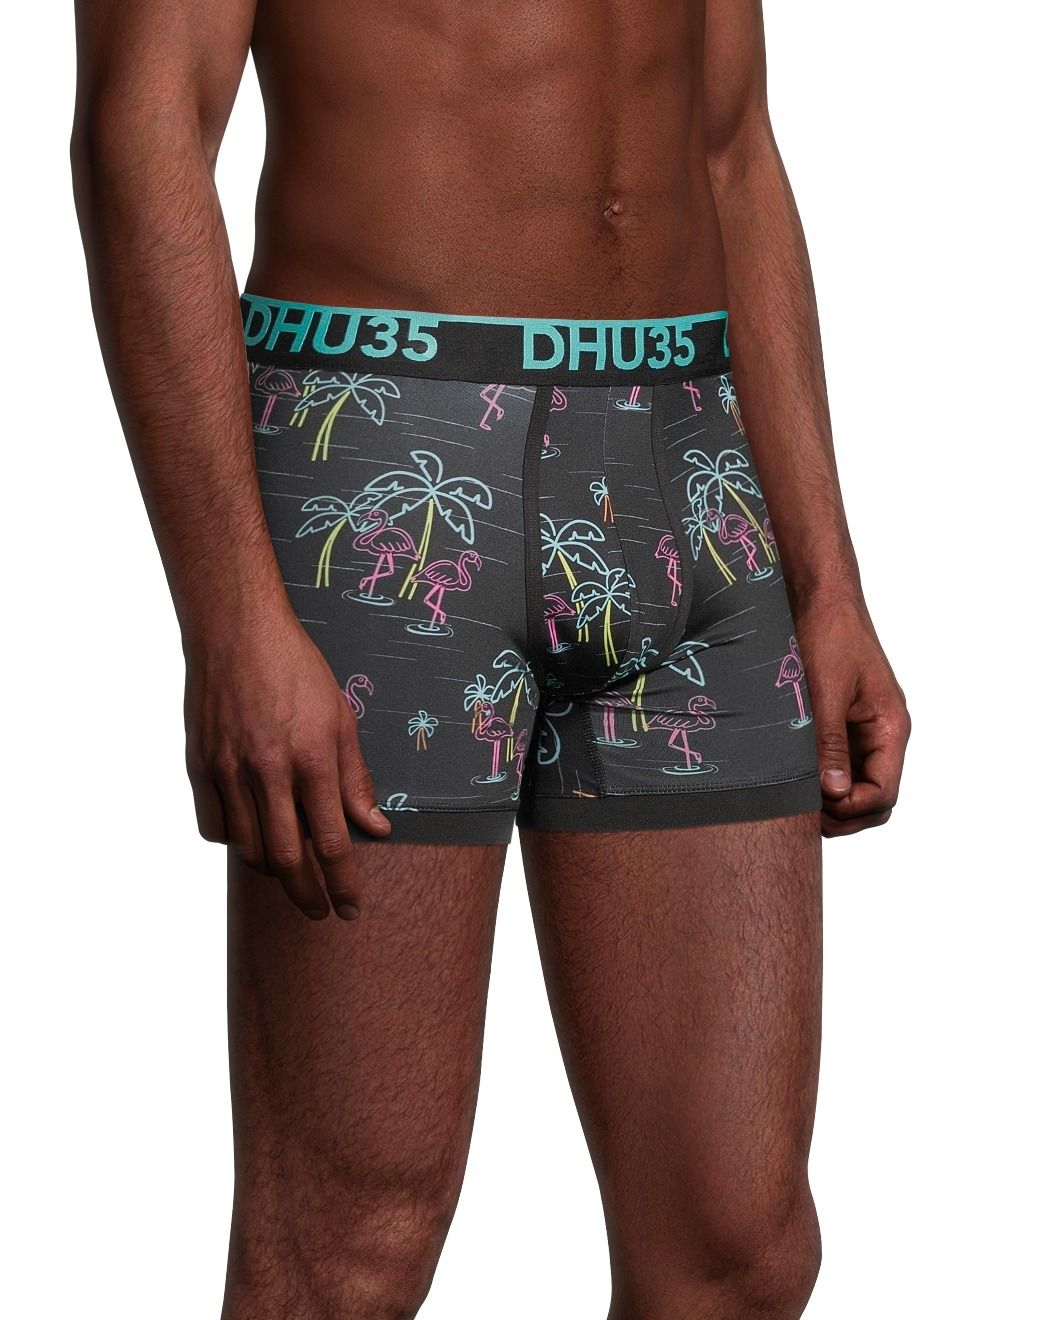 Denver Hayes Men's Printed Microfibre Boxer Briefs Underwear